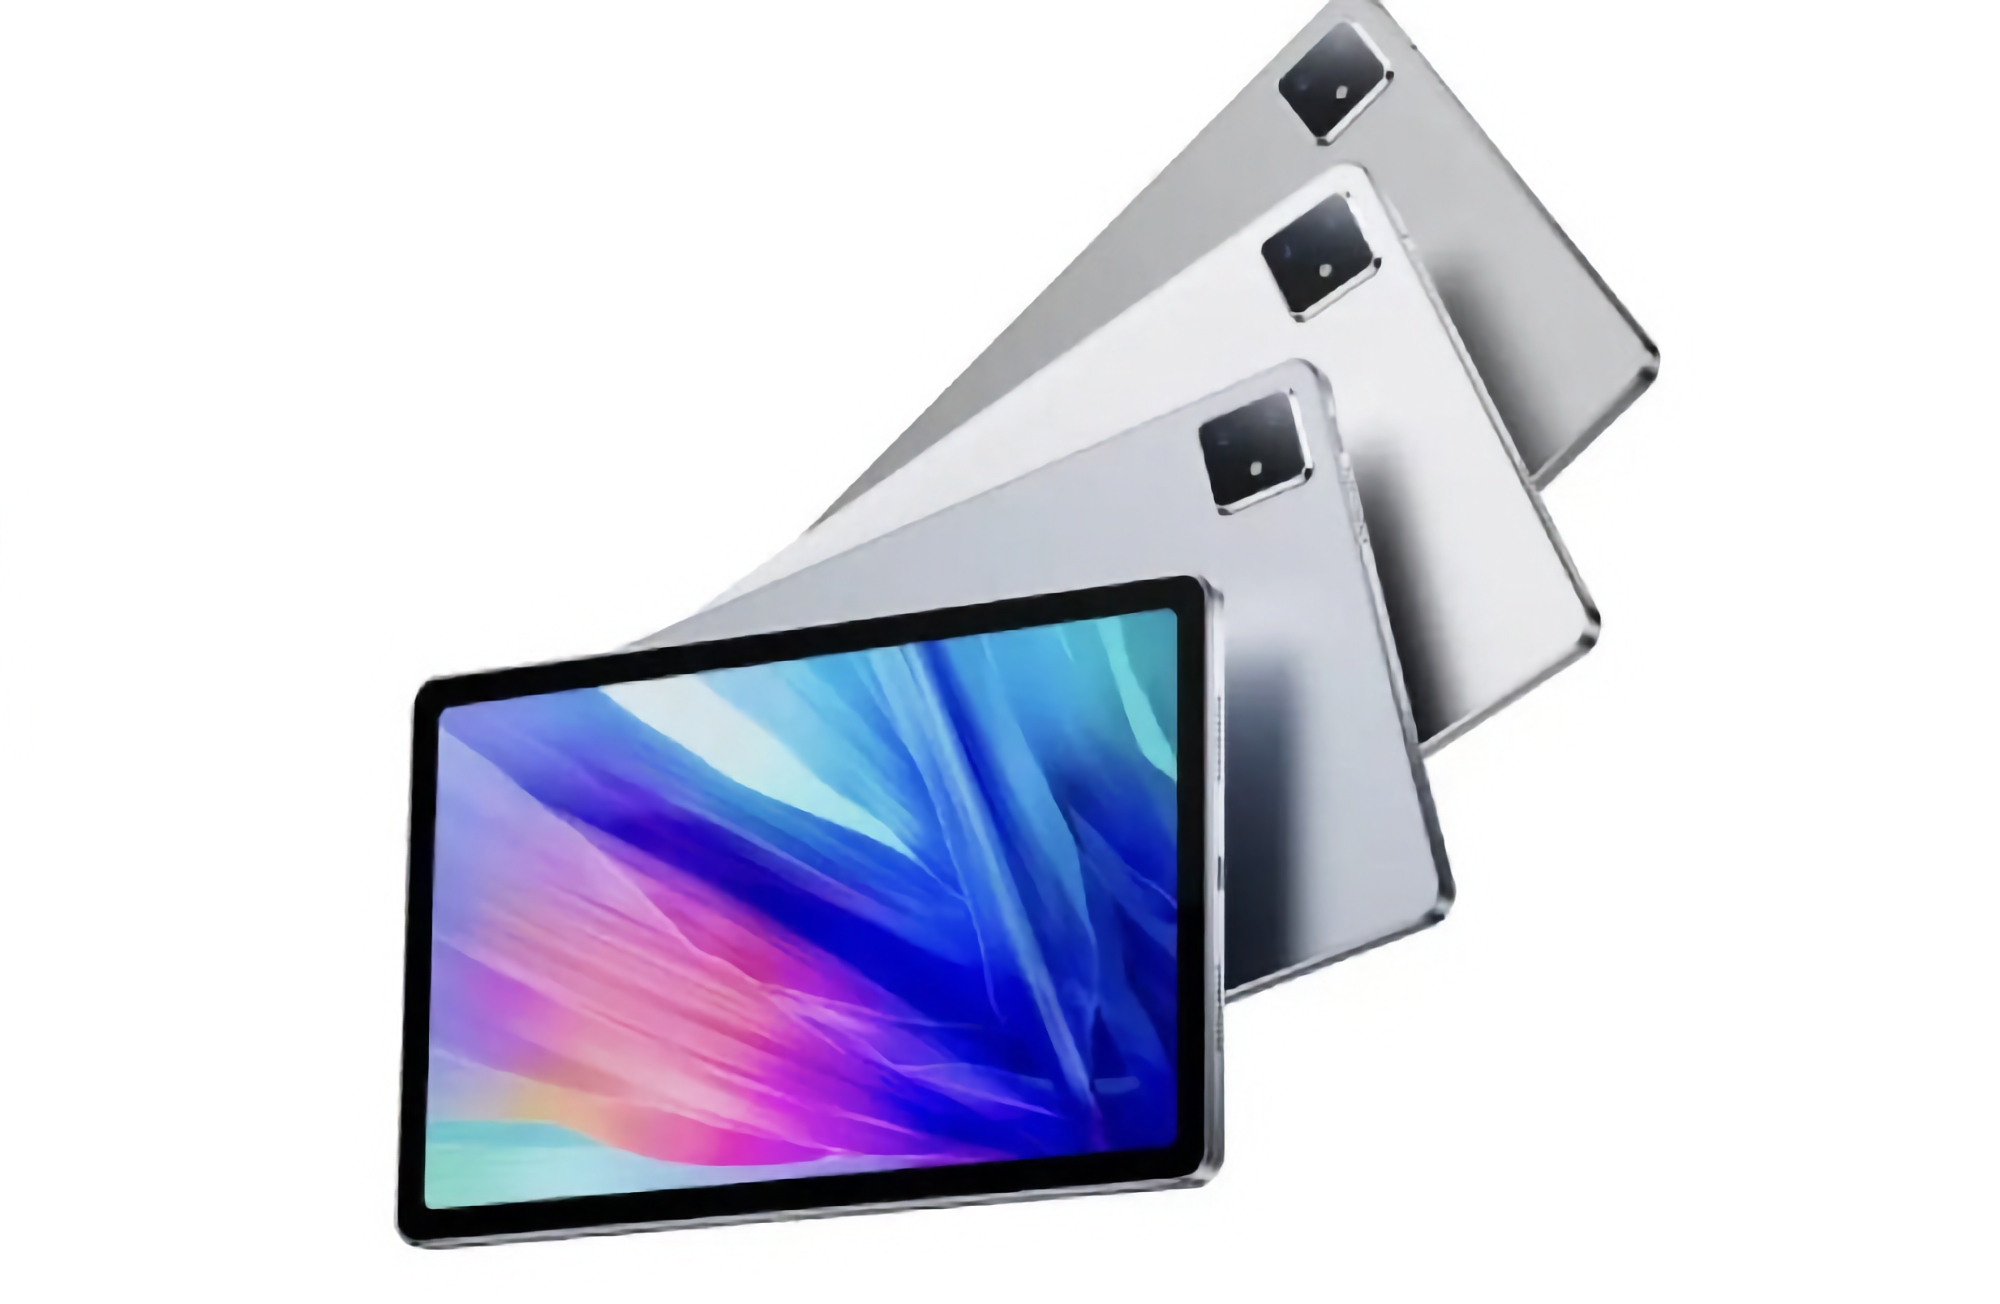 Lenovo M20 5G: tablet con chip MediaTek Kompanio 900T y batería de 7200 mAh por 338 dólares